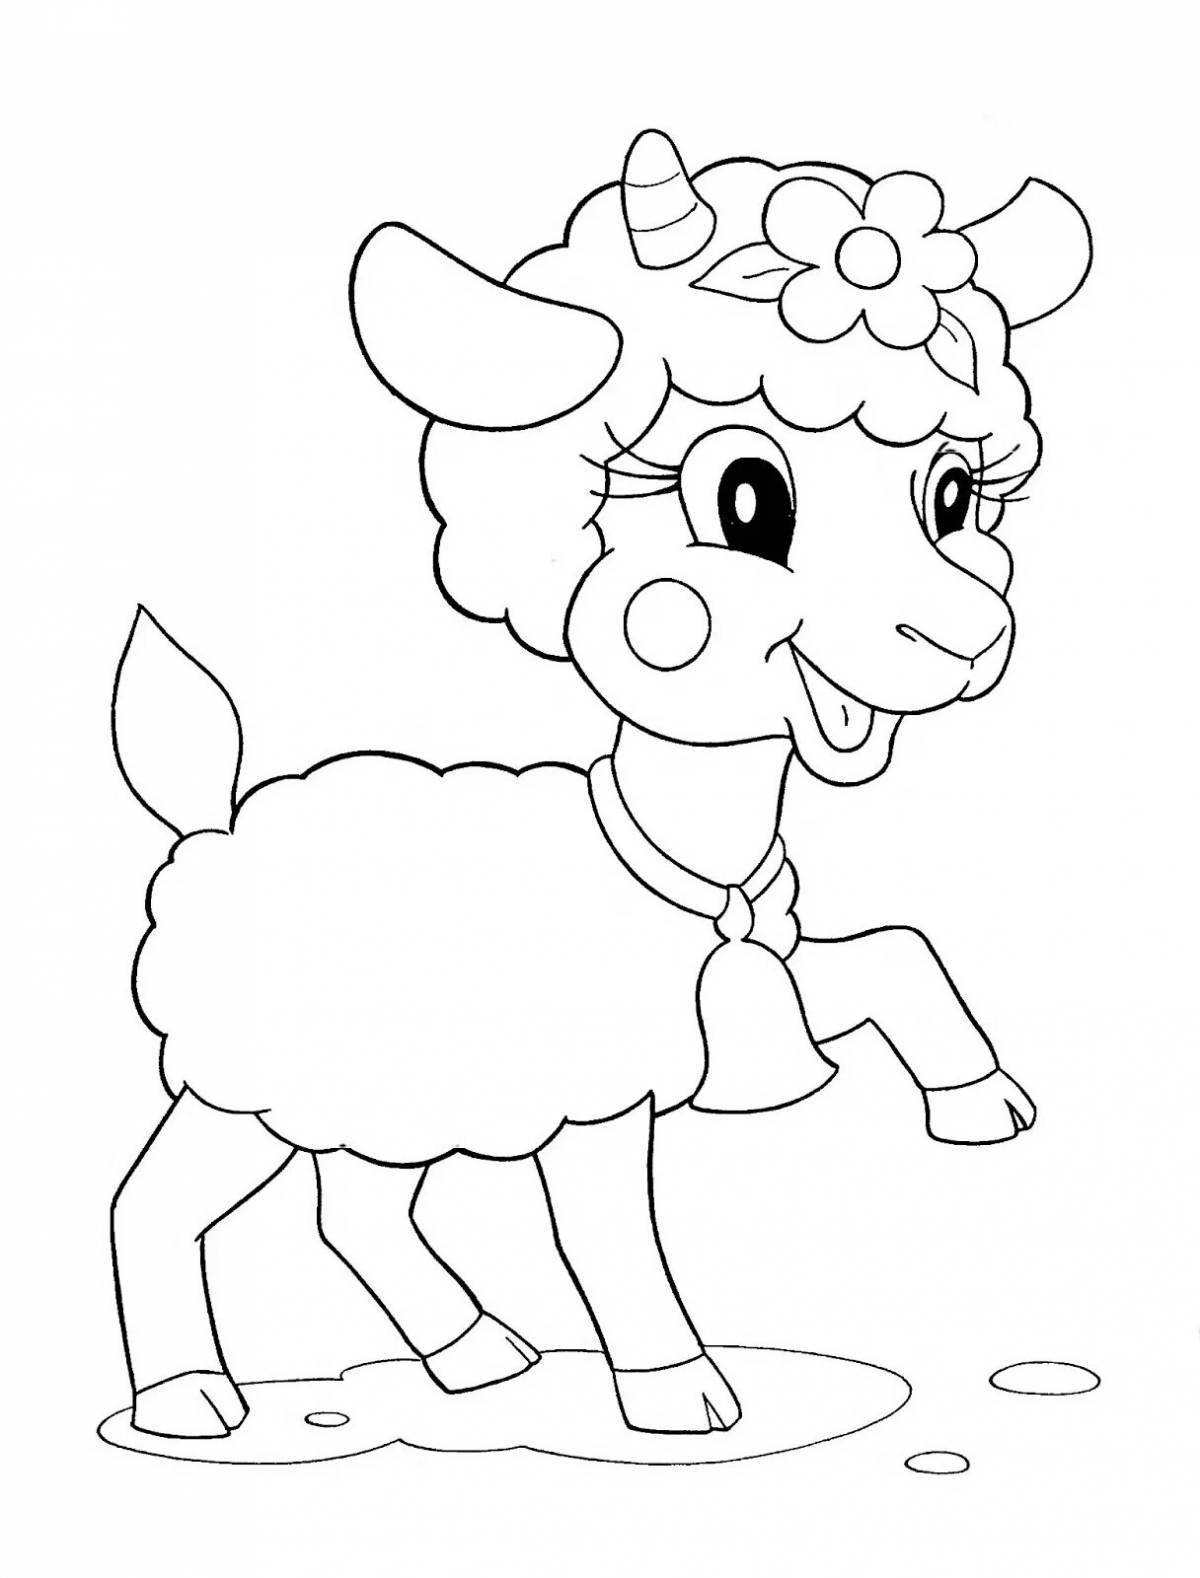 Раскраска солнечная коза для детей